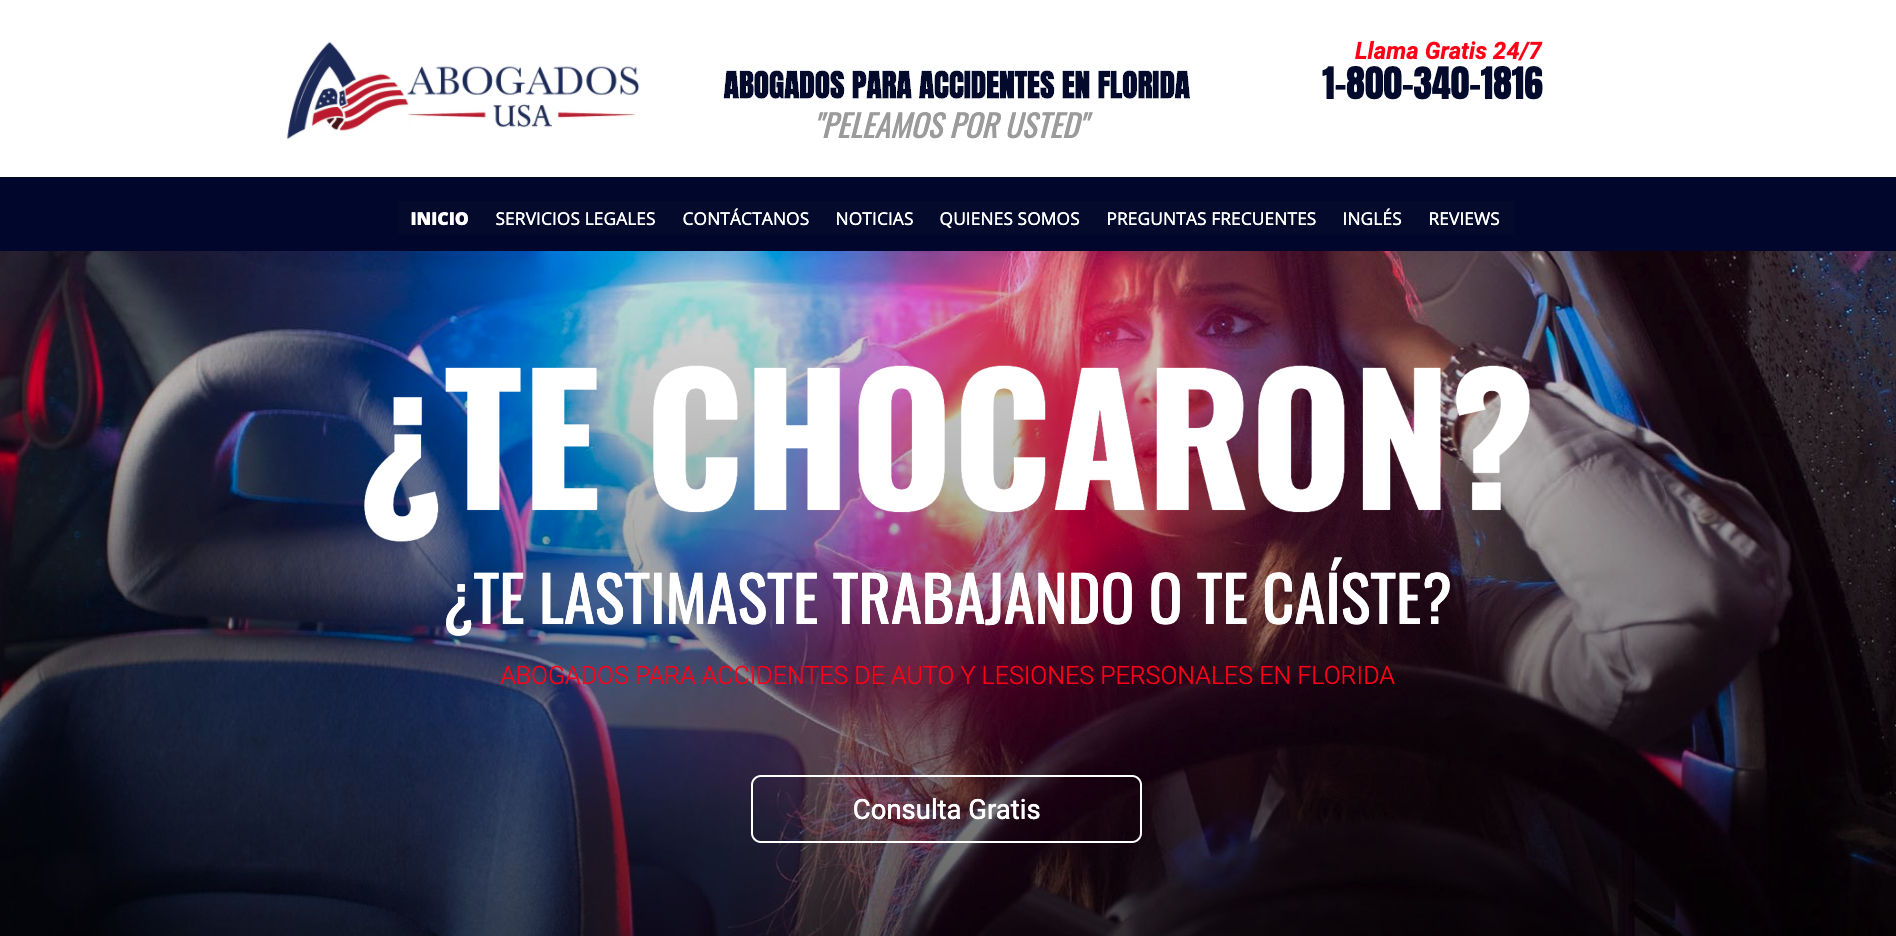 Abogados USA Spanish Website